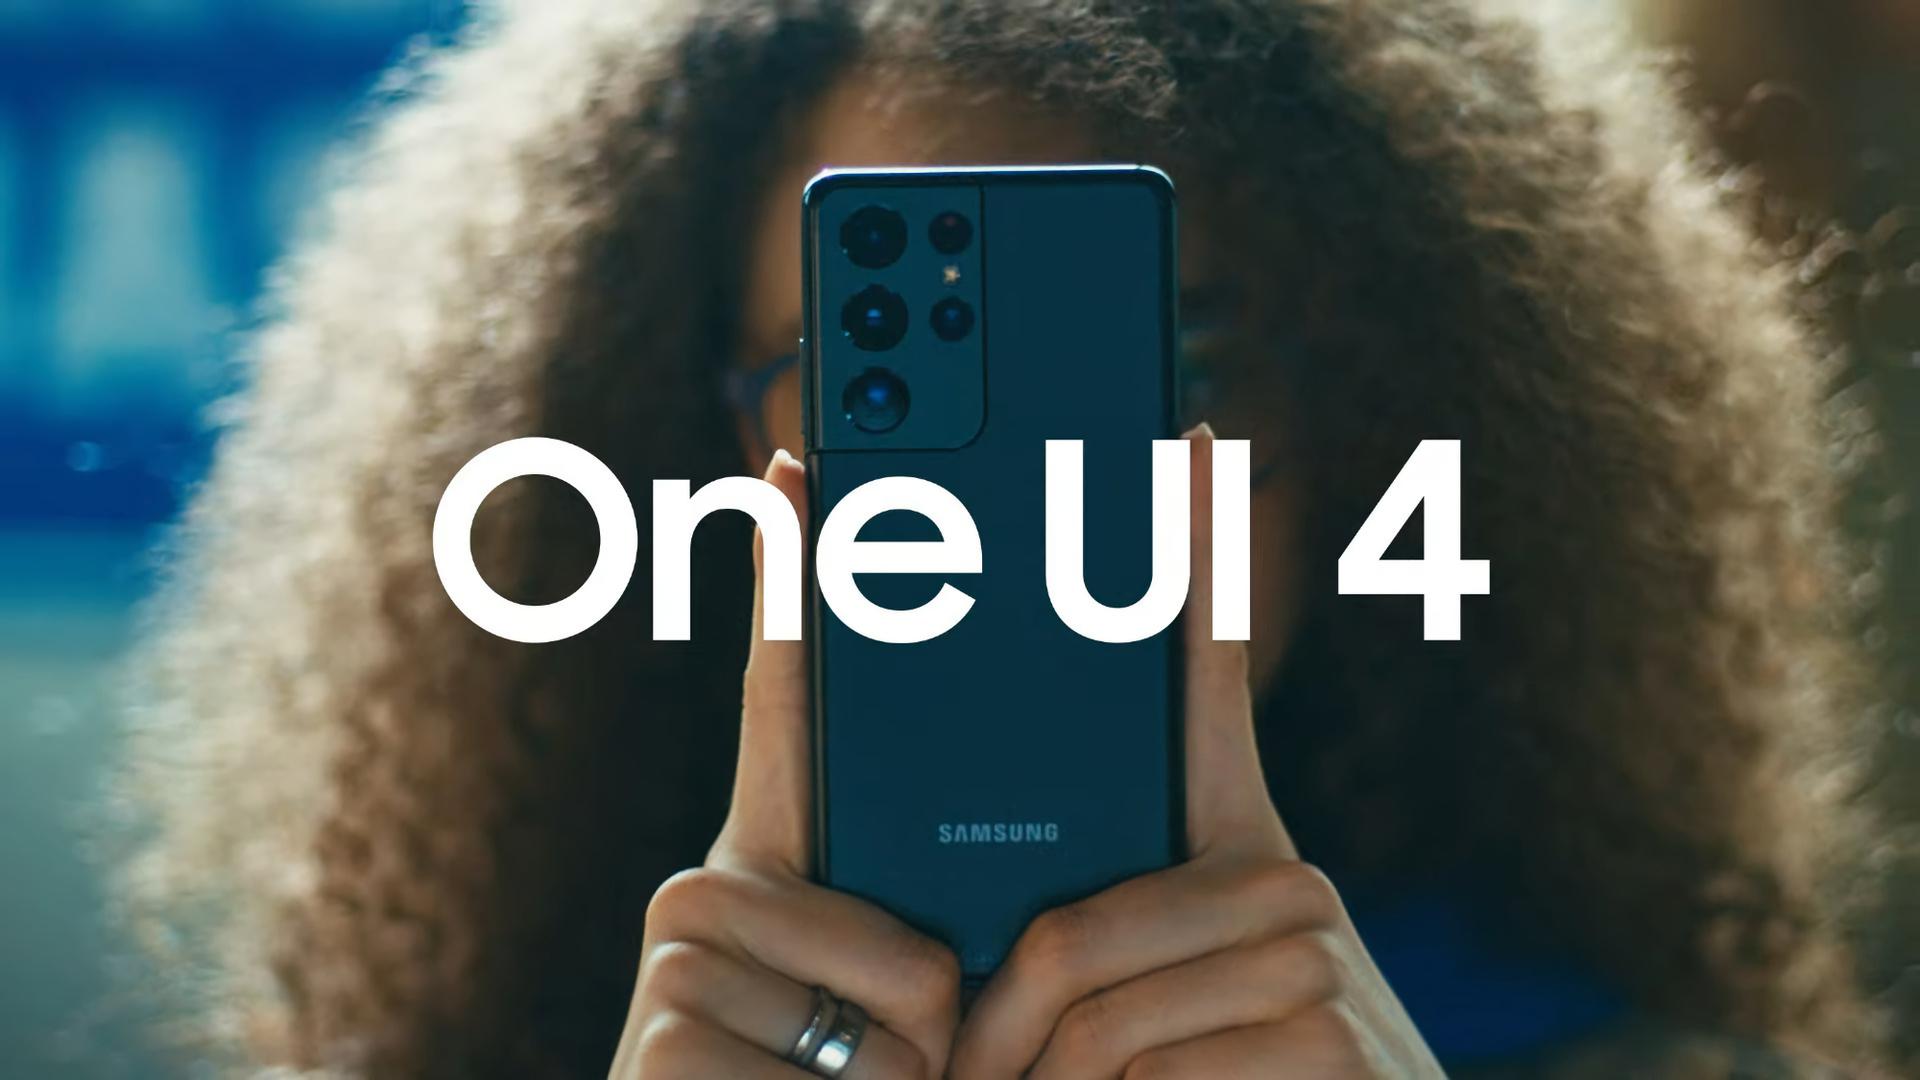 23 smartfony Samsung otrzymały stabilny One UI 4.0 - pełna lista opublikowanych modeli